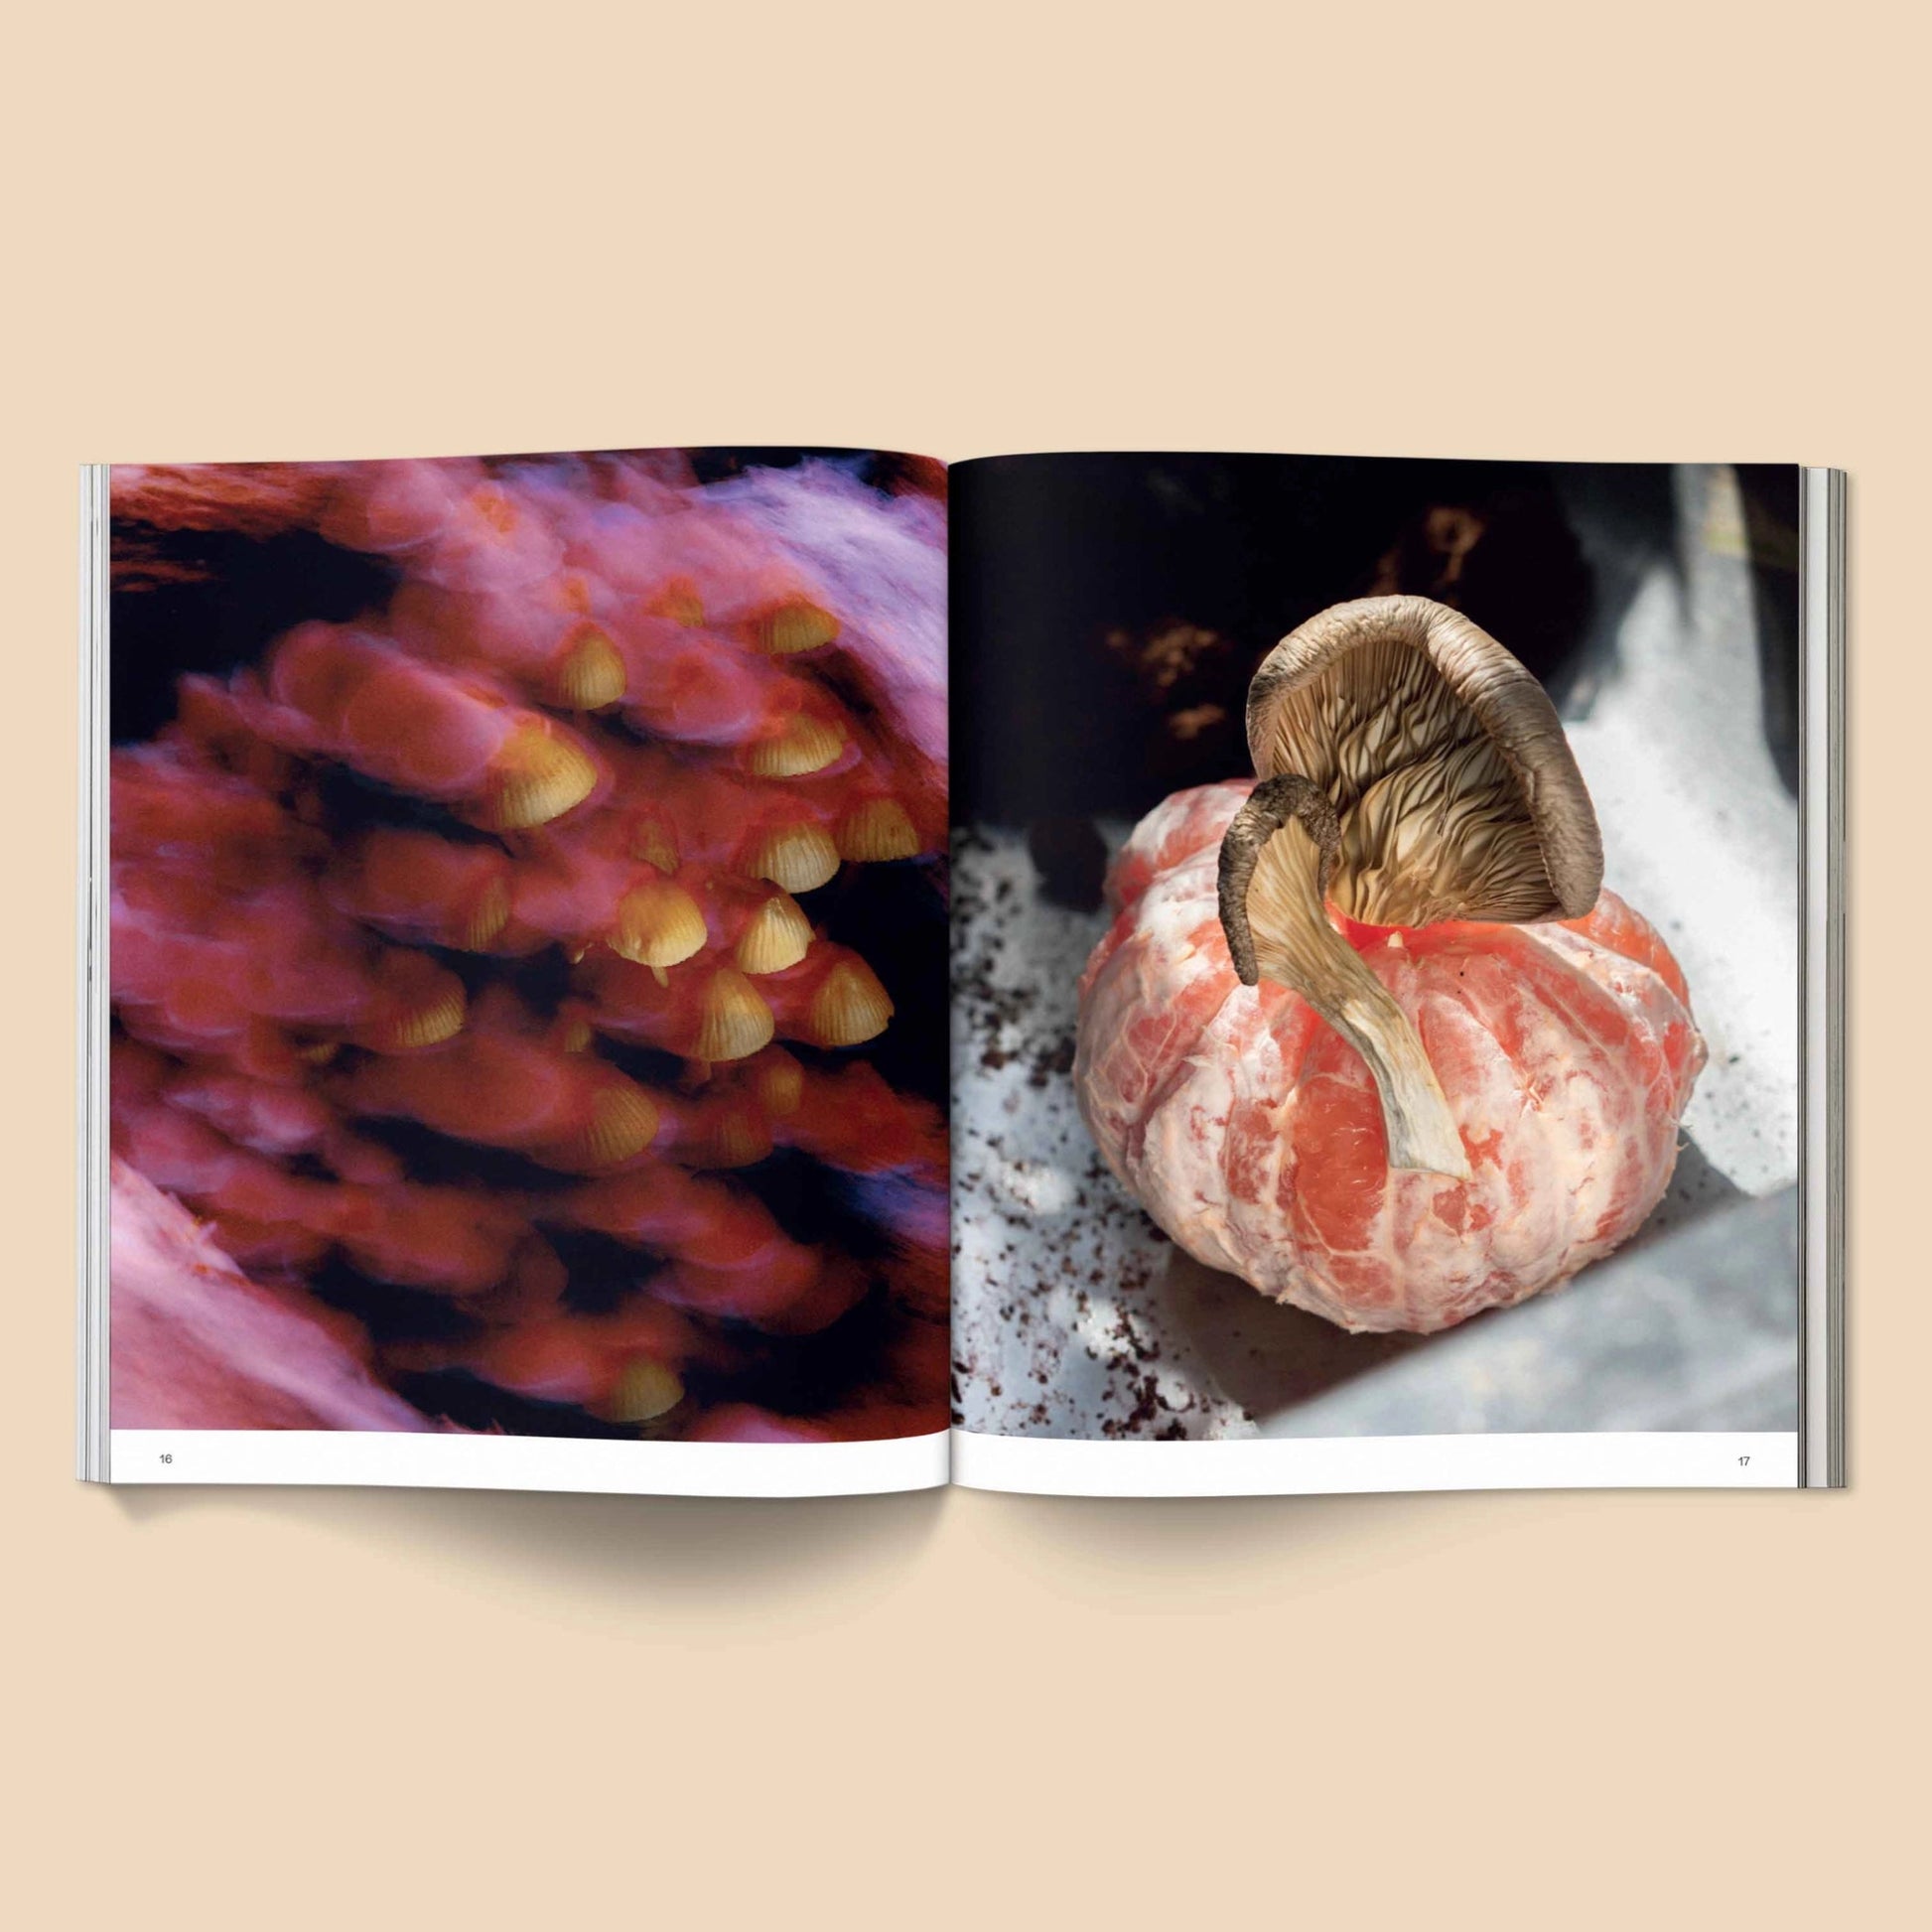 BROCCOLI MAGAZINE- Spores: Magical Mushroom Photography Book - Preston ApothecaryBroccoli